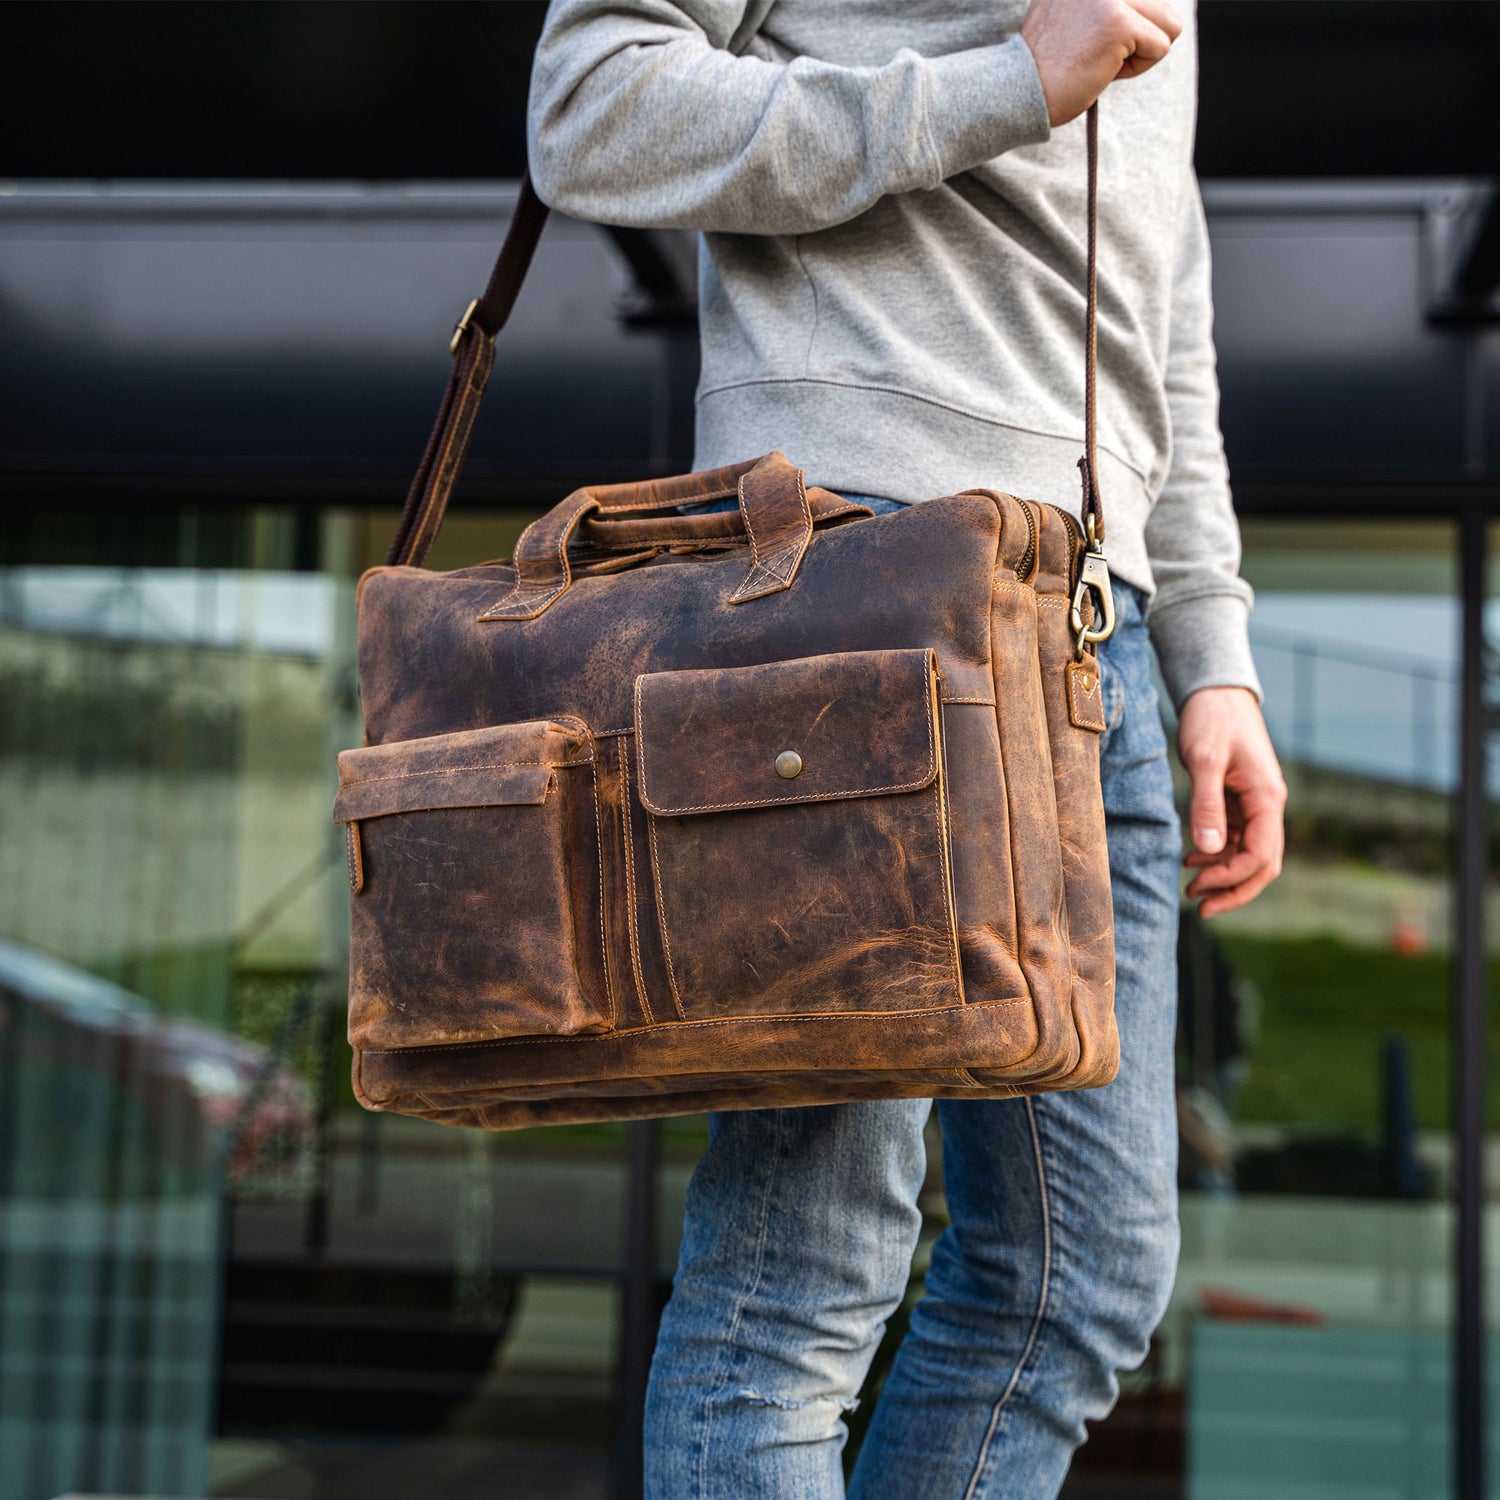 Men's Leather Bags – MASNCO